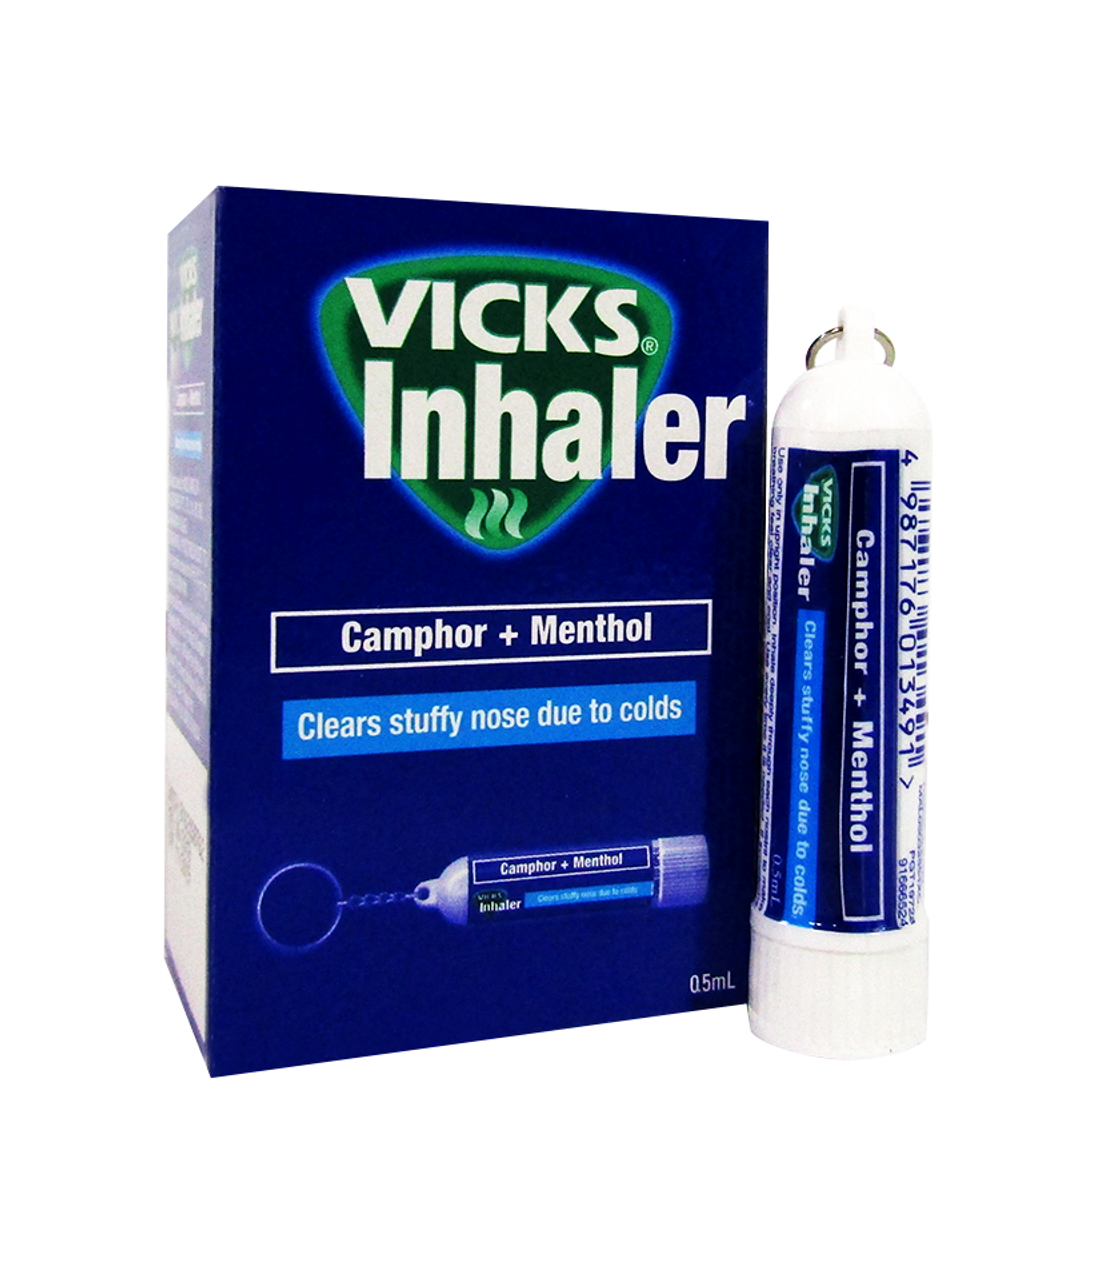 Buy Vicks Inhaler with Keychain Online